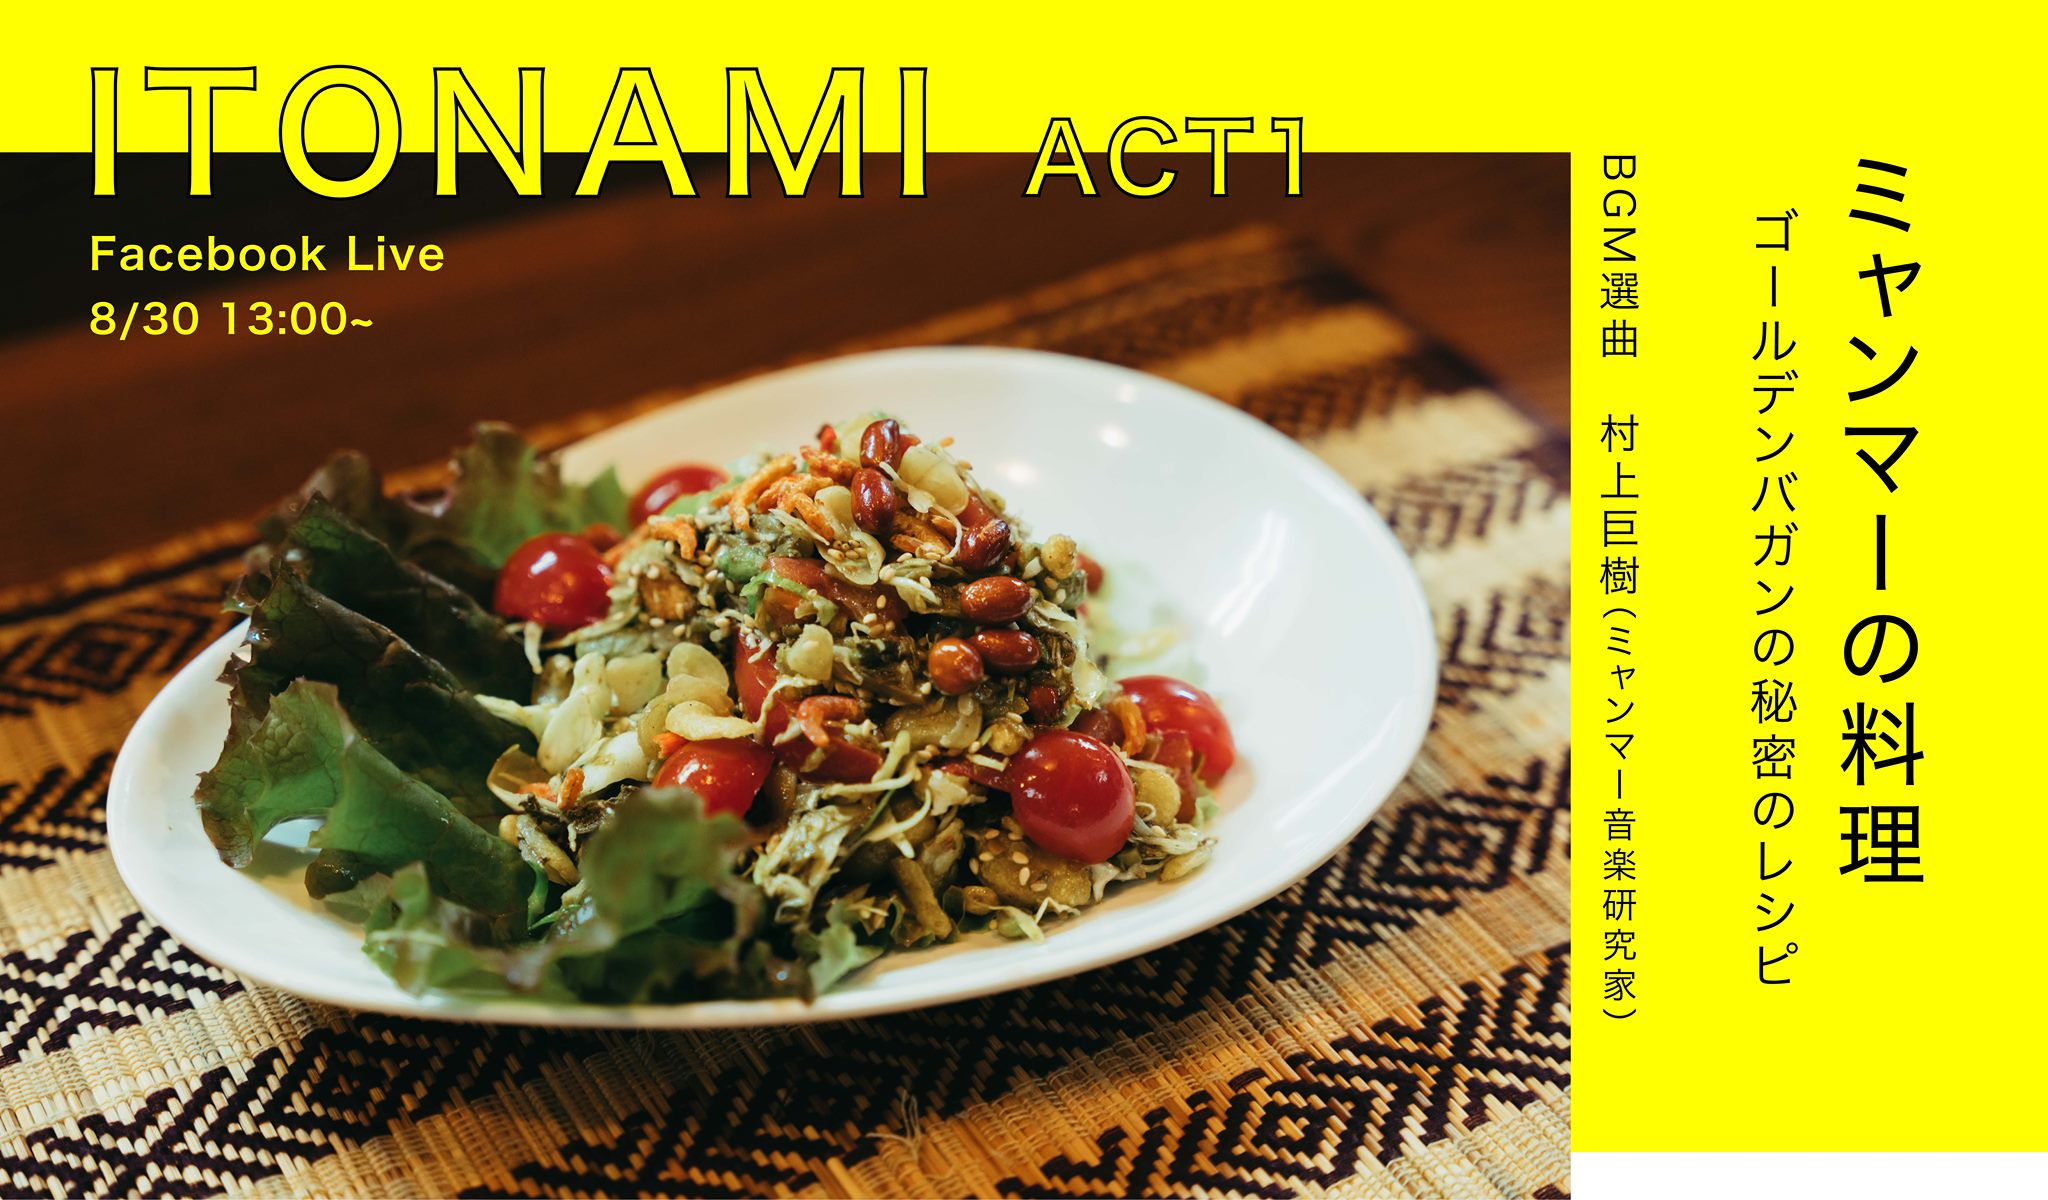 20200830Sun. Itonami ACT1 ミャンマーの料理、ゴールデンバガンの秘密のレシピ